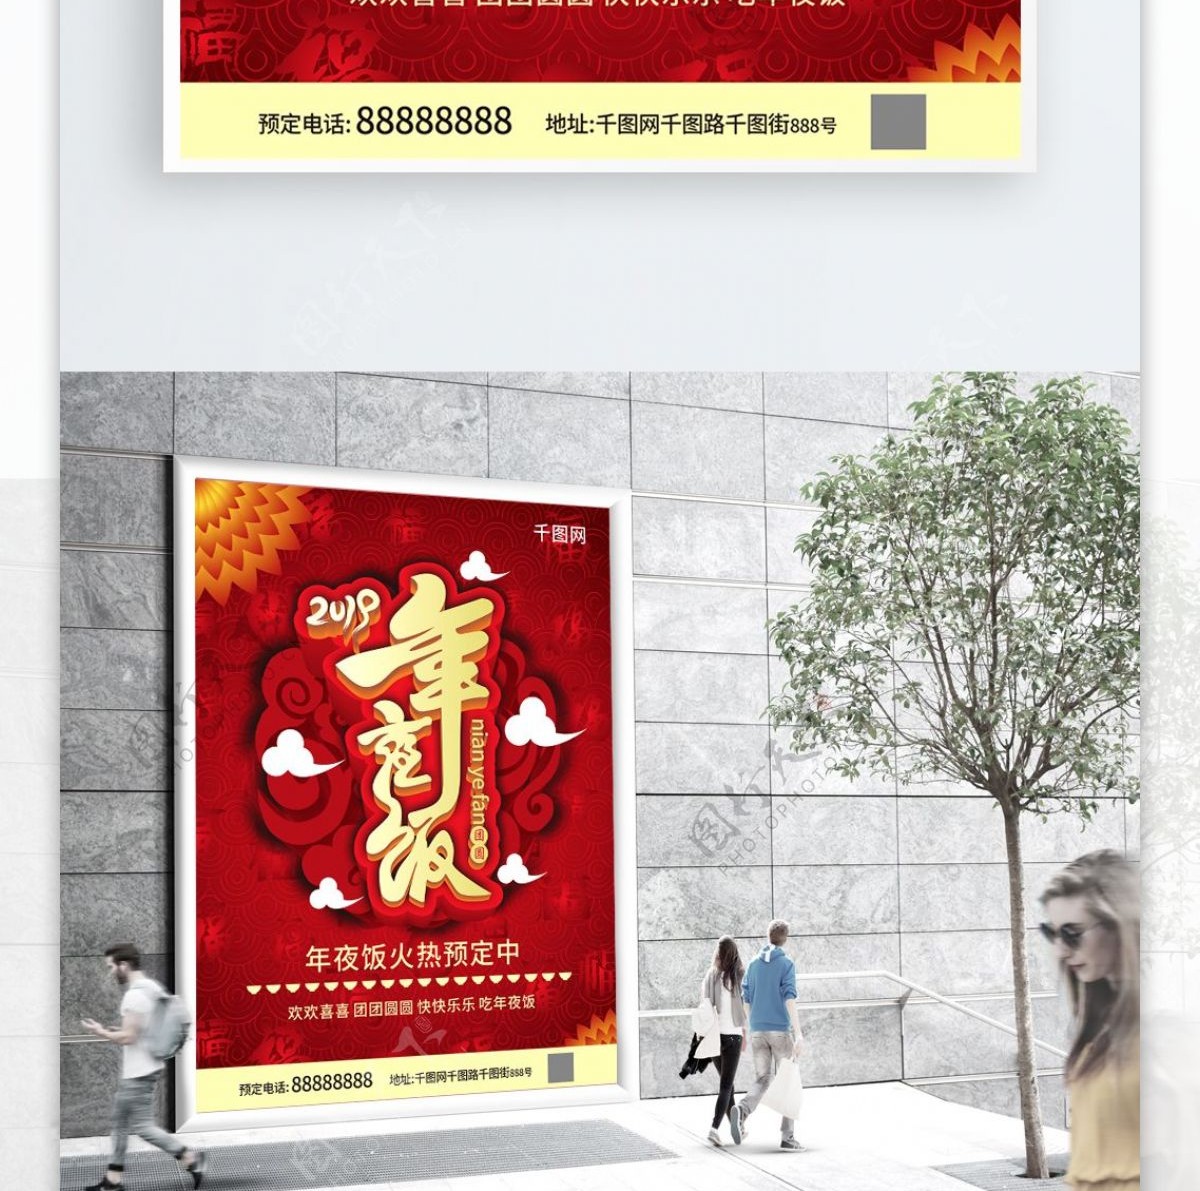 红色中国风年夜饭酒店促销宣传海报CDR